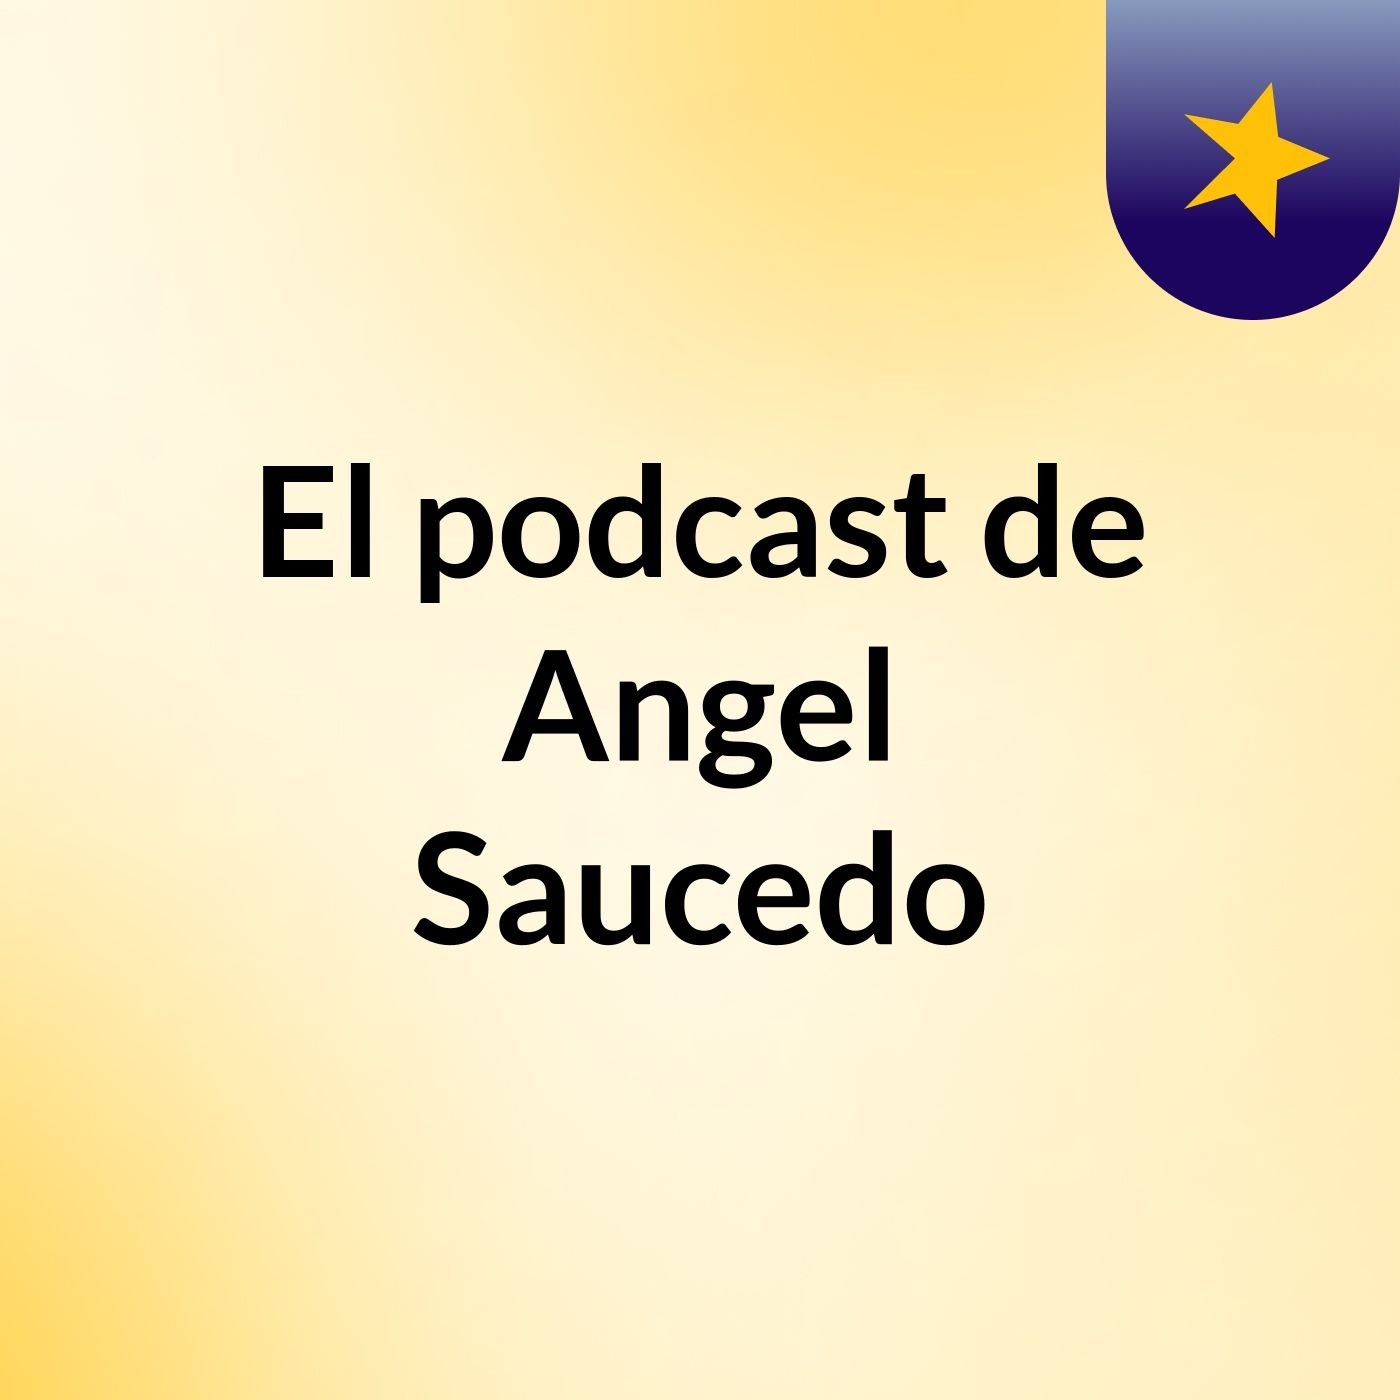 El podcast de Angel Saucedo